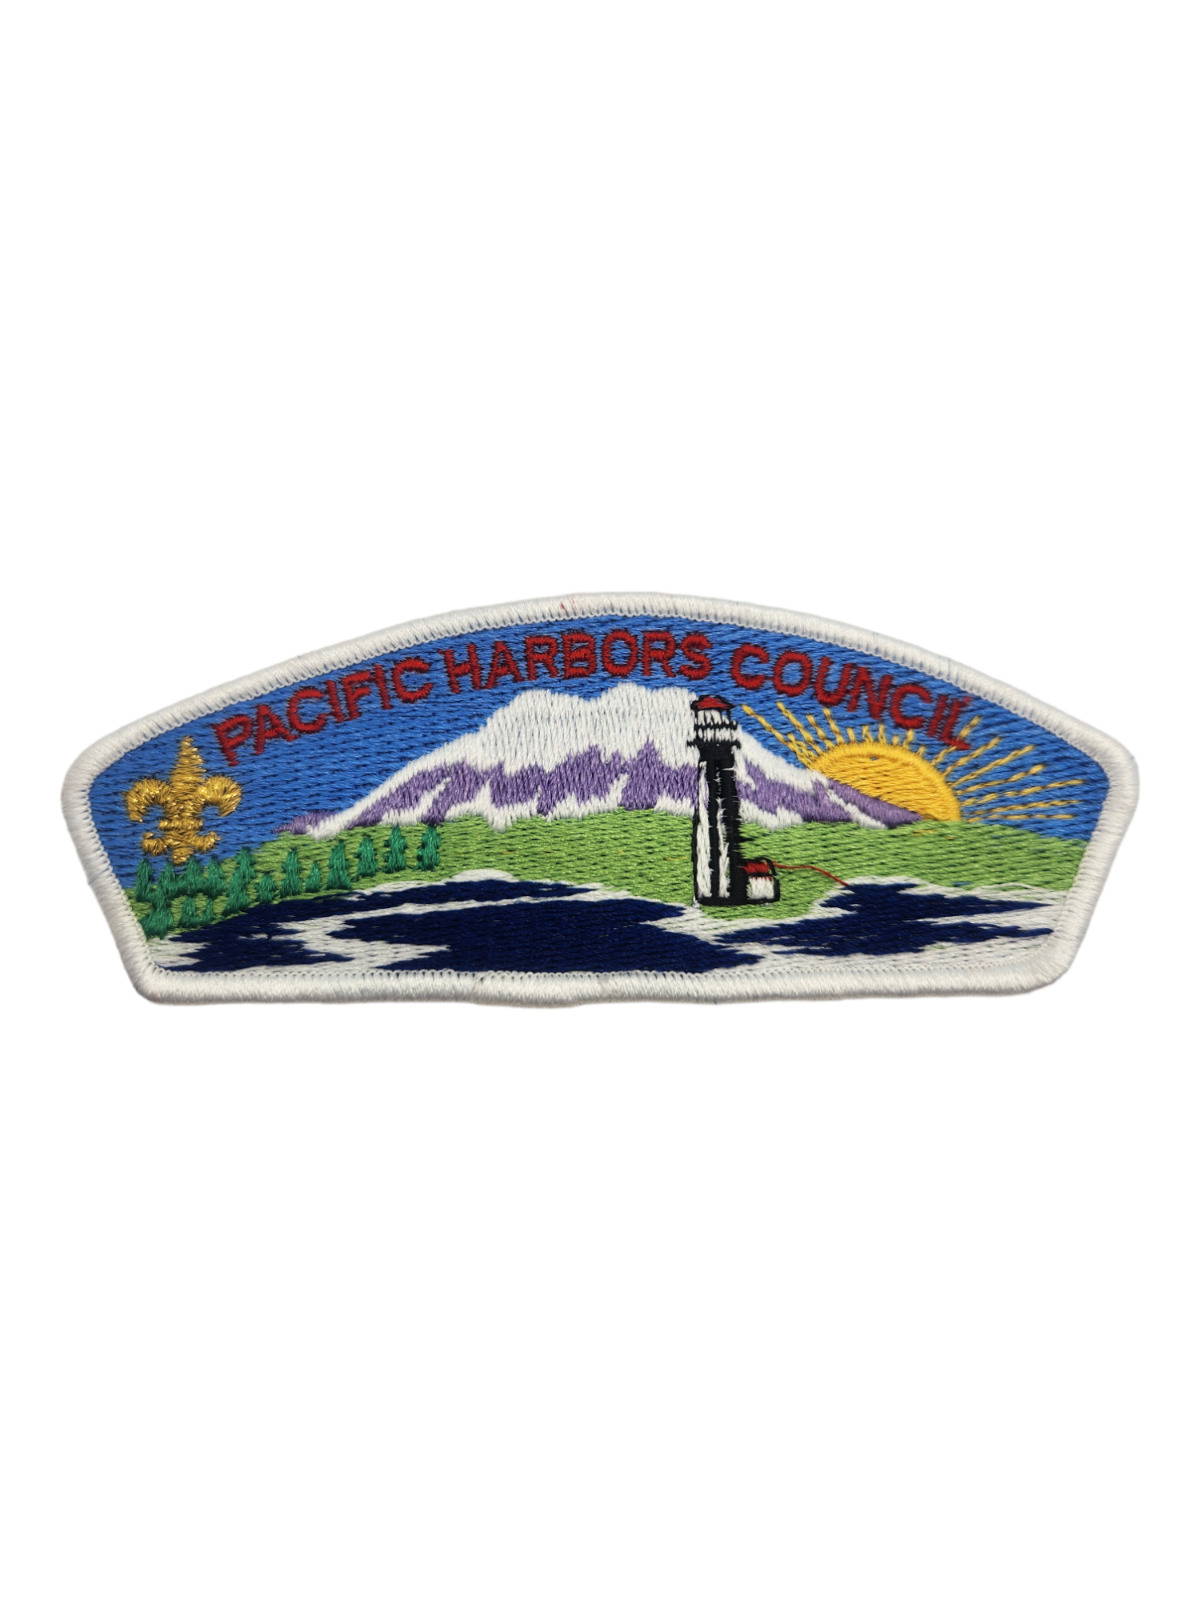 Pacific Harbors Council Shoulder Boy Scout BSA Patch